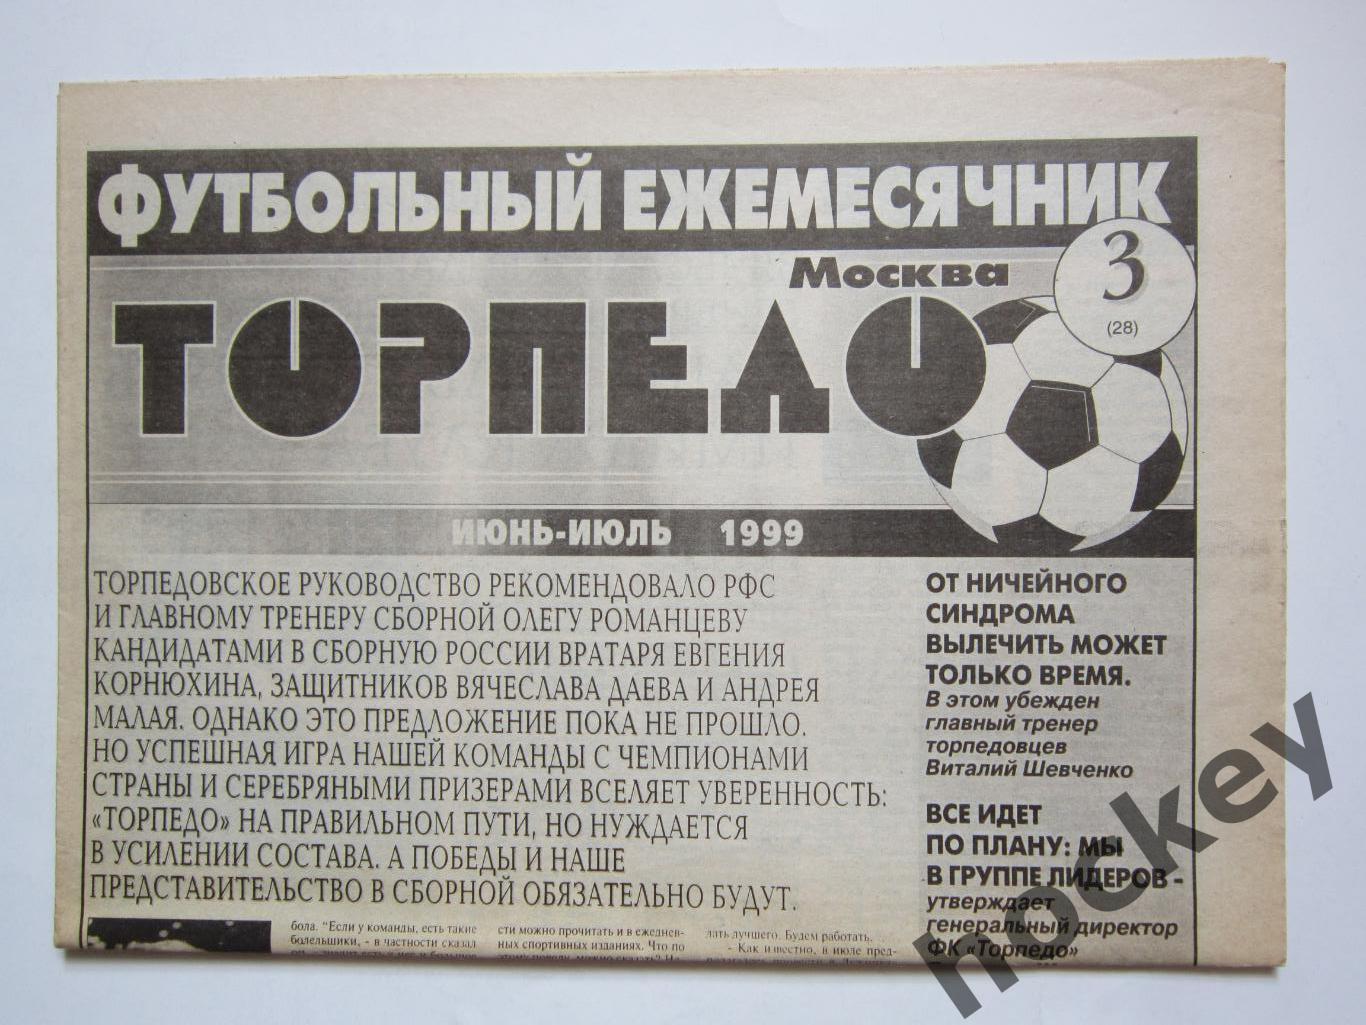 Футбольный ежемесячник Торпедо (Москва). №3 (28). 1999 год (июнь-июль)